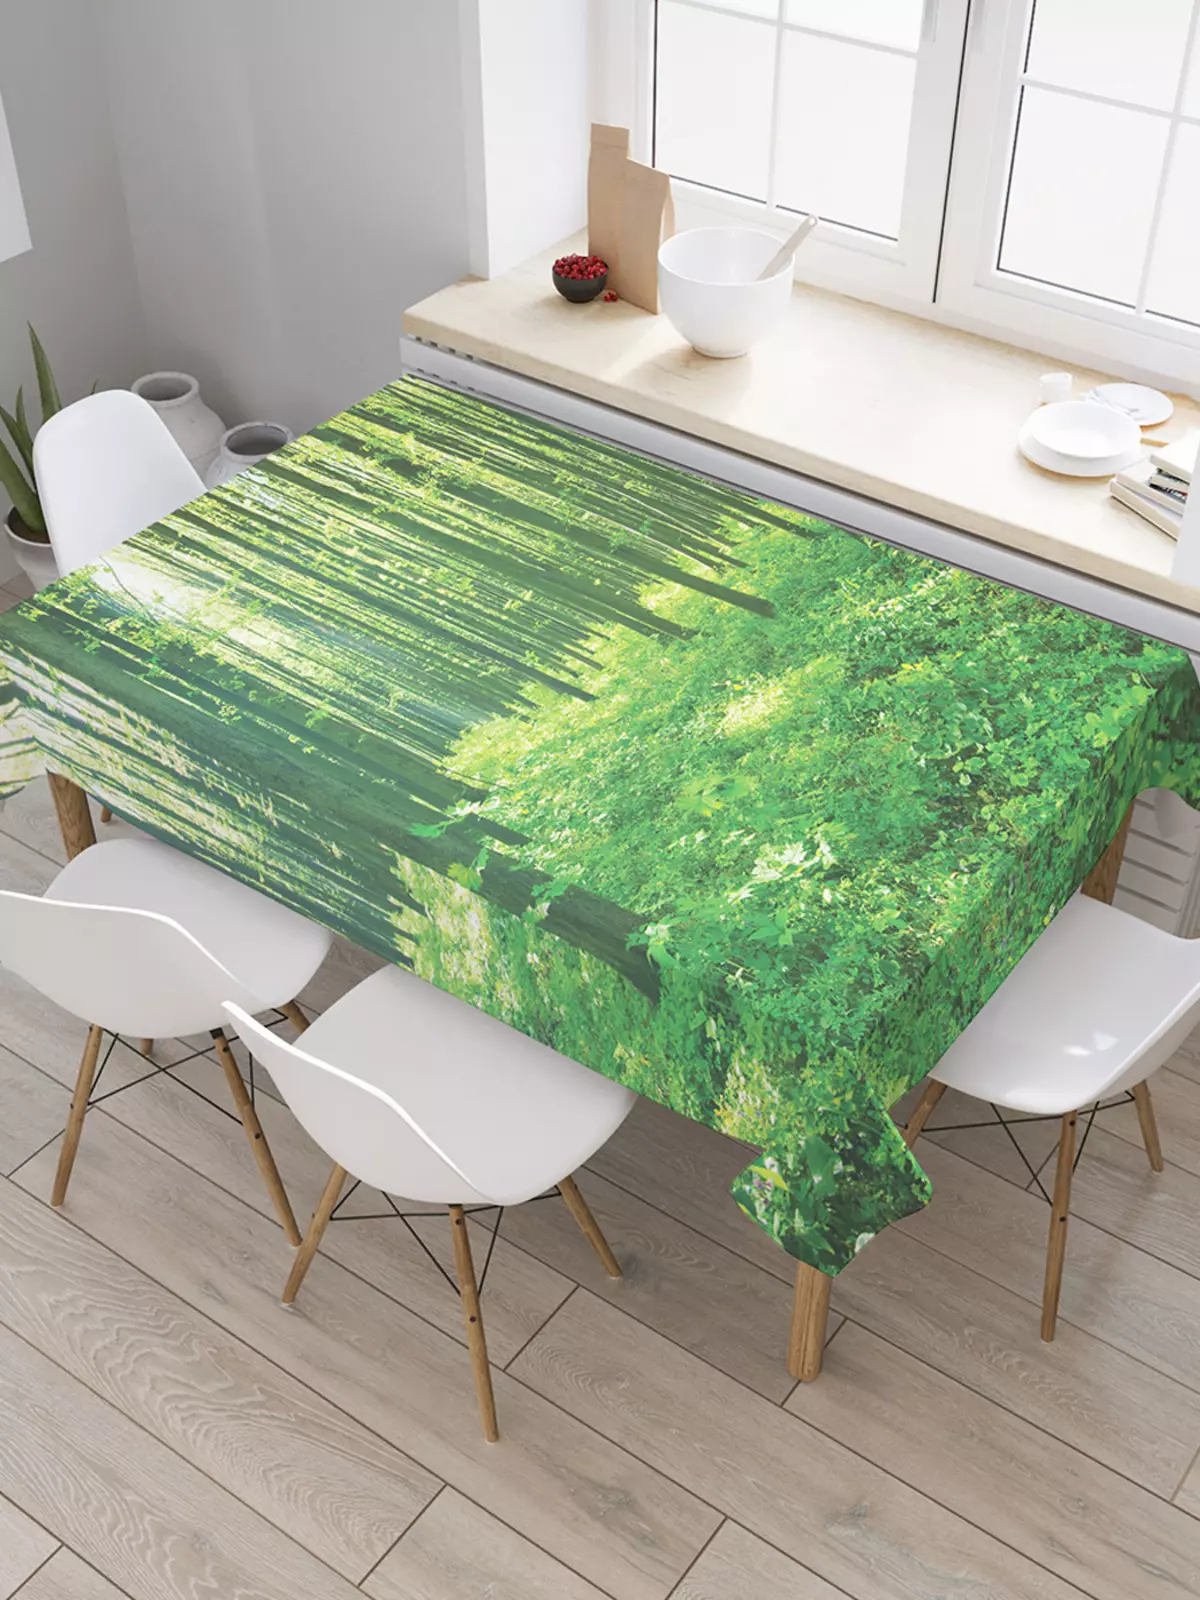 녹색 식탁보 : 테이블 및 회색 녹색, 설정 옵션에있는 어두운 녹색 모노 포닉 식탁보. 인테리어의 린넨 및 자카드, 타원형 및 둥근 식탁보 21601_8